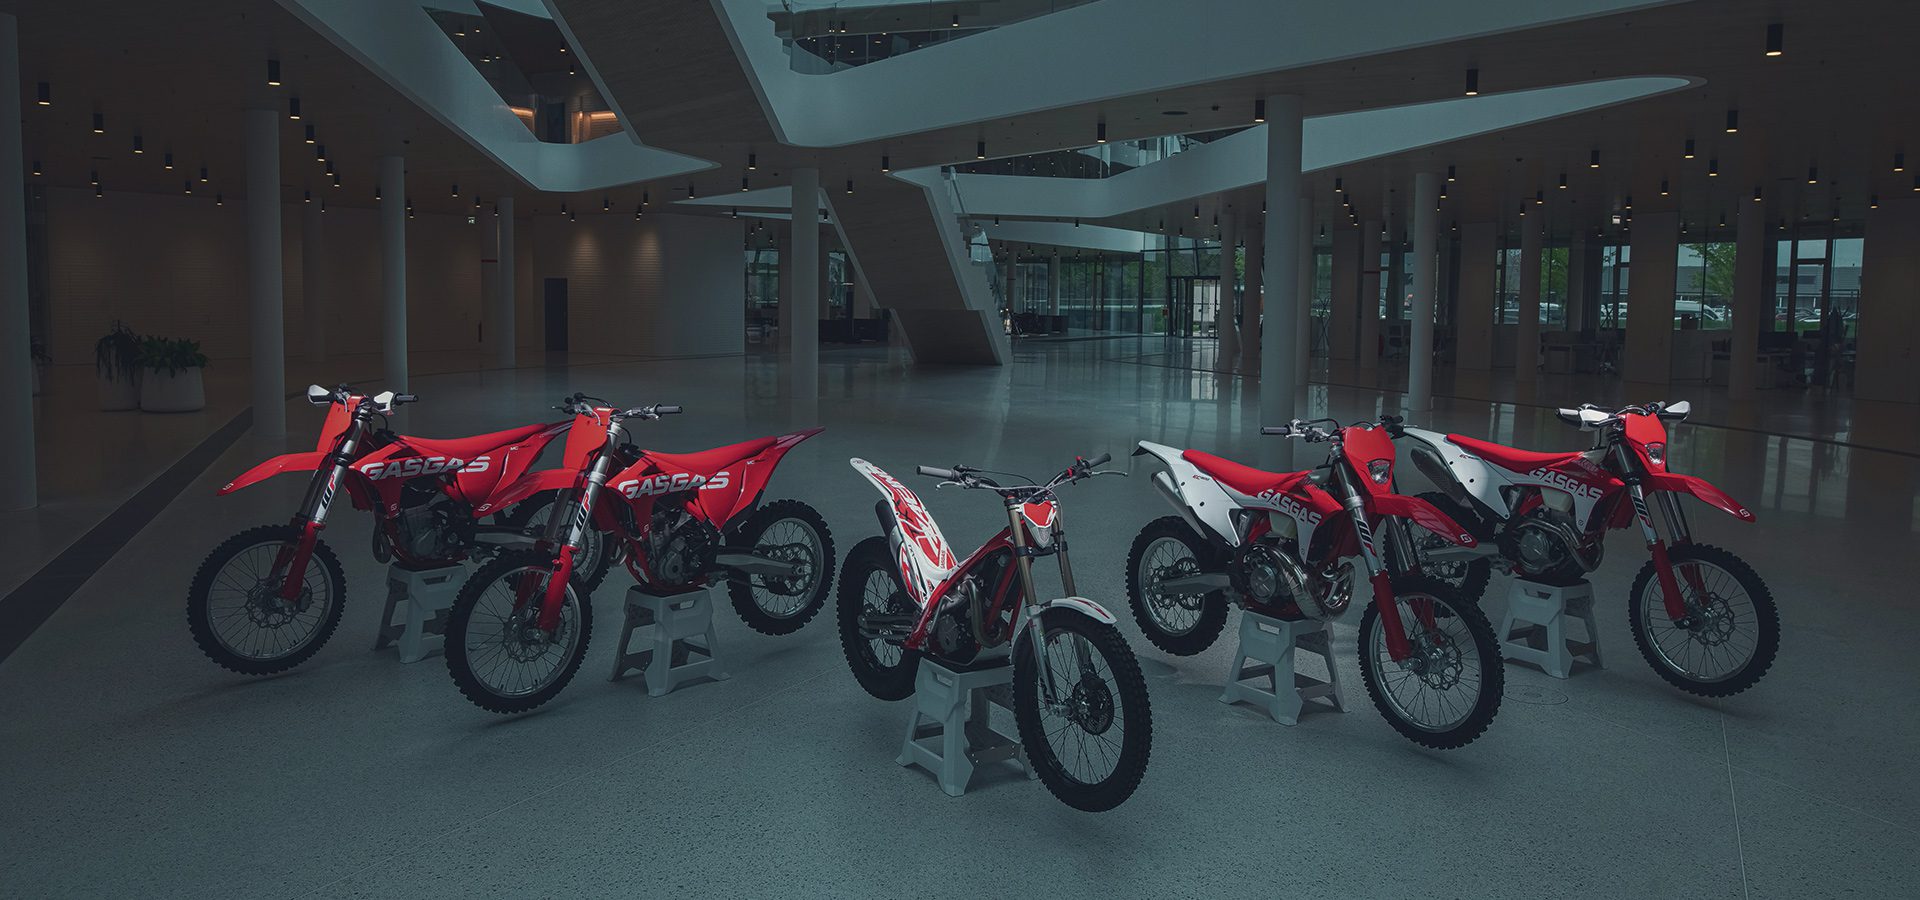 2022 gasgas motorcycle models